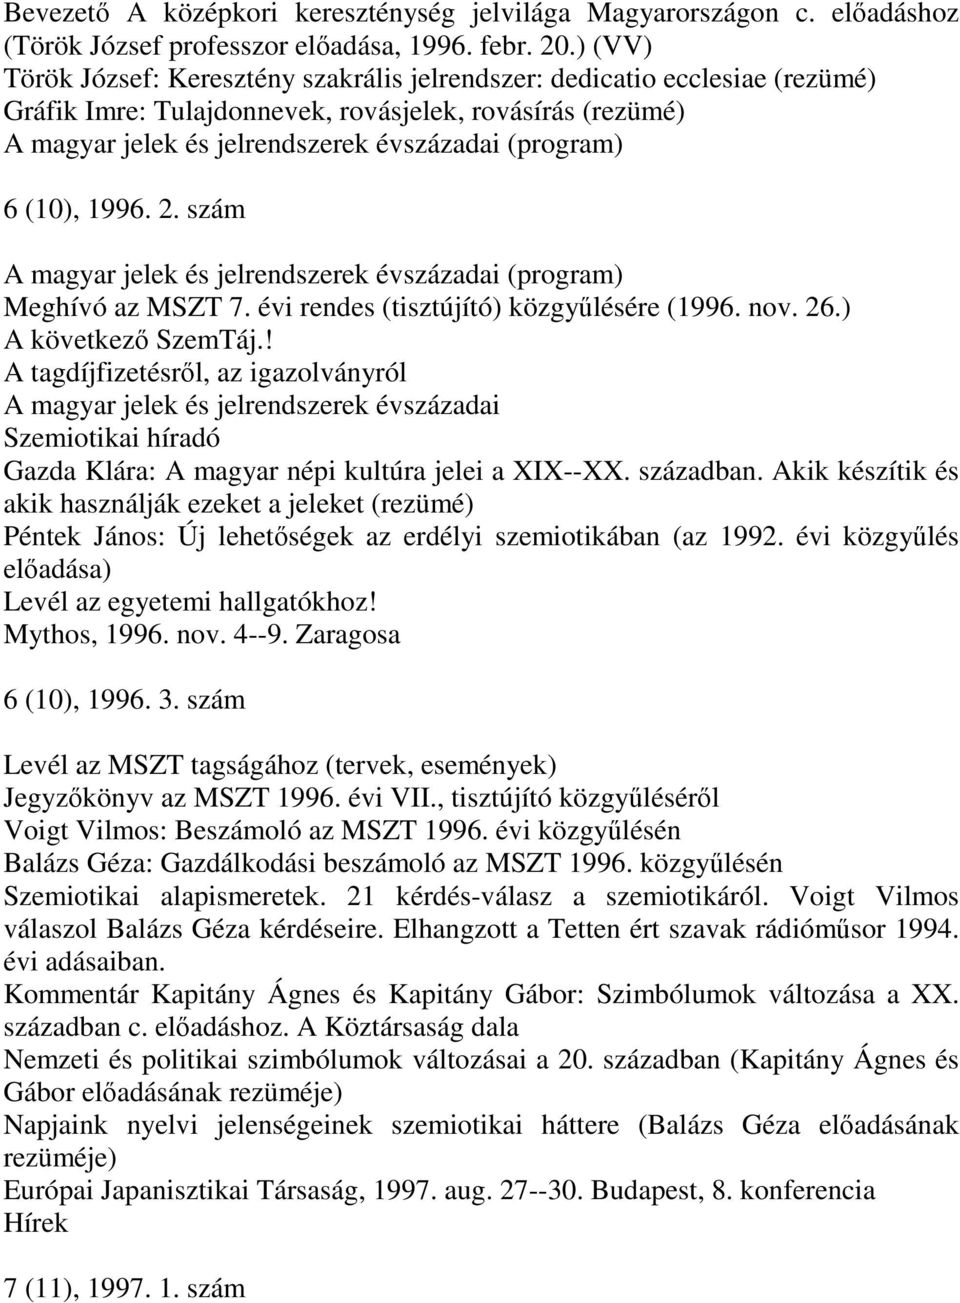 (10), 1996. 2. szám A magyar jelek és jelrendszerek évszázadai (program) Meghívó az MSZT 7. évi rendes (tisztújító) közgyűlésére (1996. nov. 26.) A következő SzemTáj.